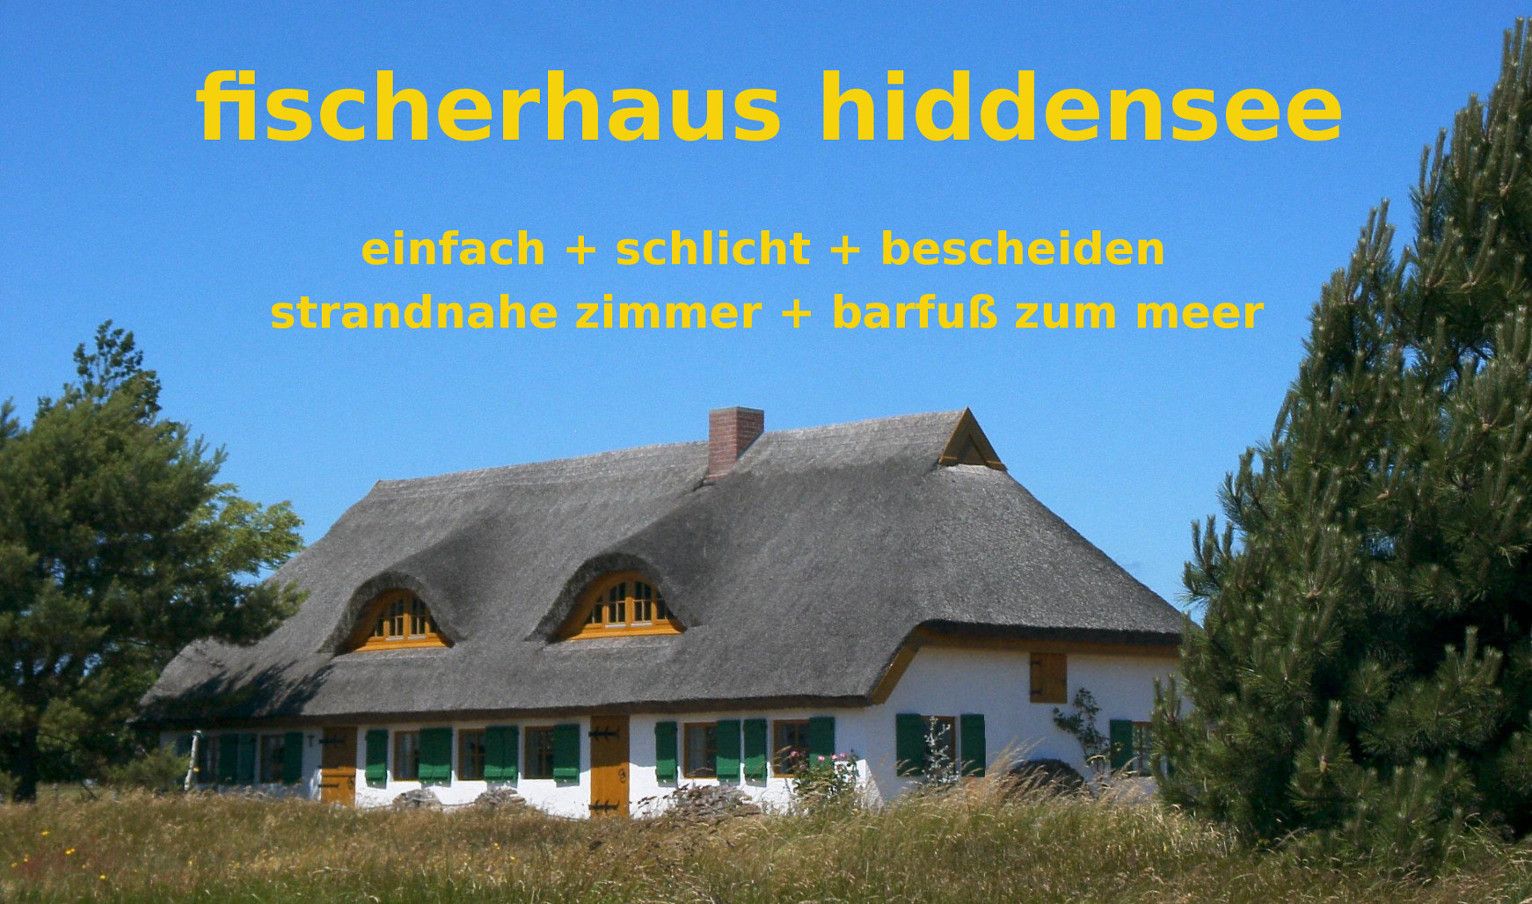 (c) Fischerhaus-hiddensee.de